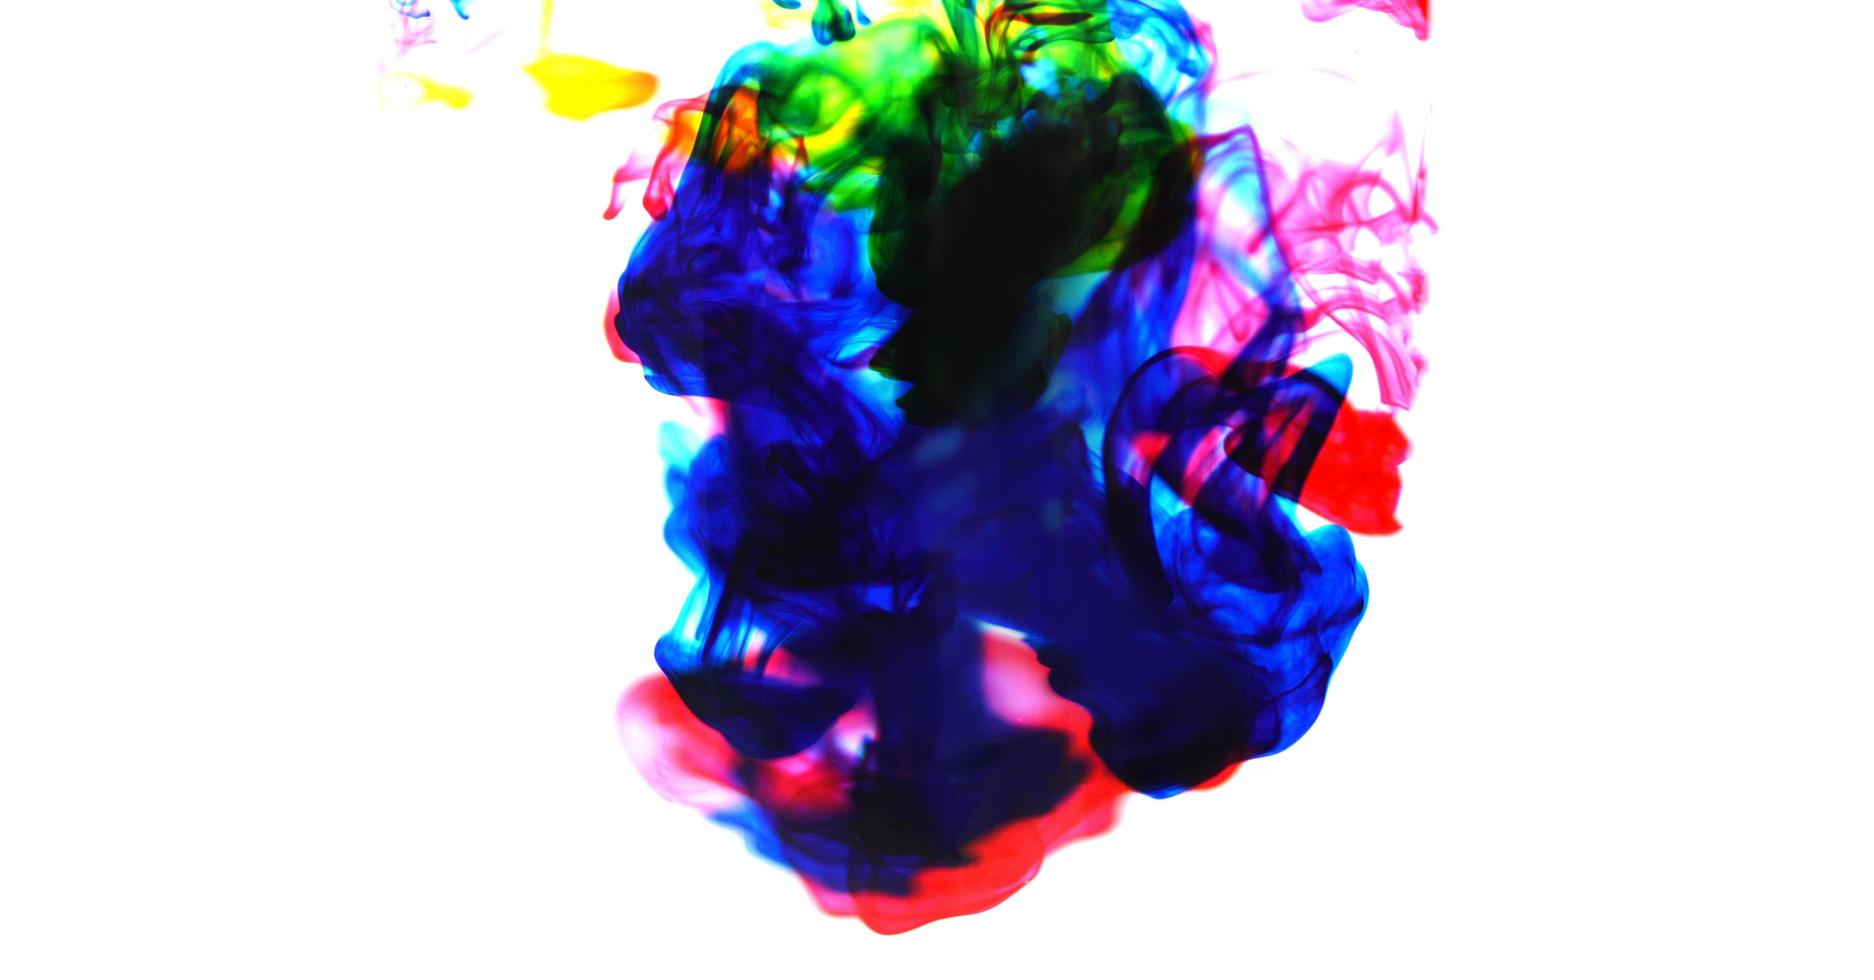 cmyk bläck begrepp Färg stänk för måla - regnbåge bläck släppa akryl färger i vatten på vit bakgrund , fläck och selektiv fokus foto